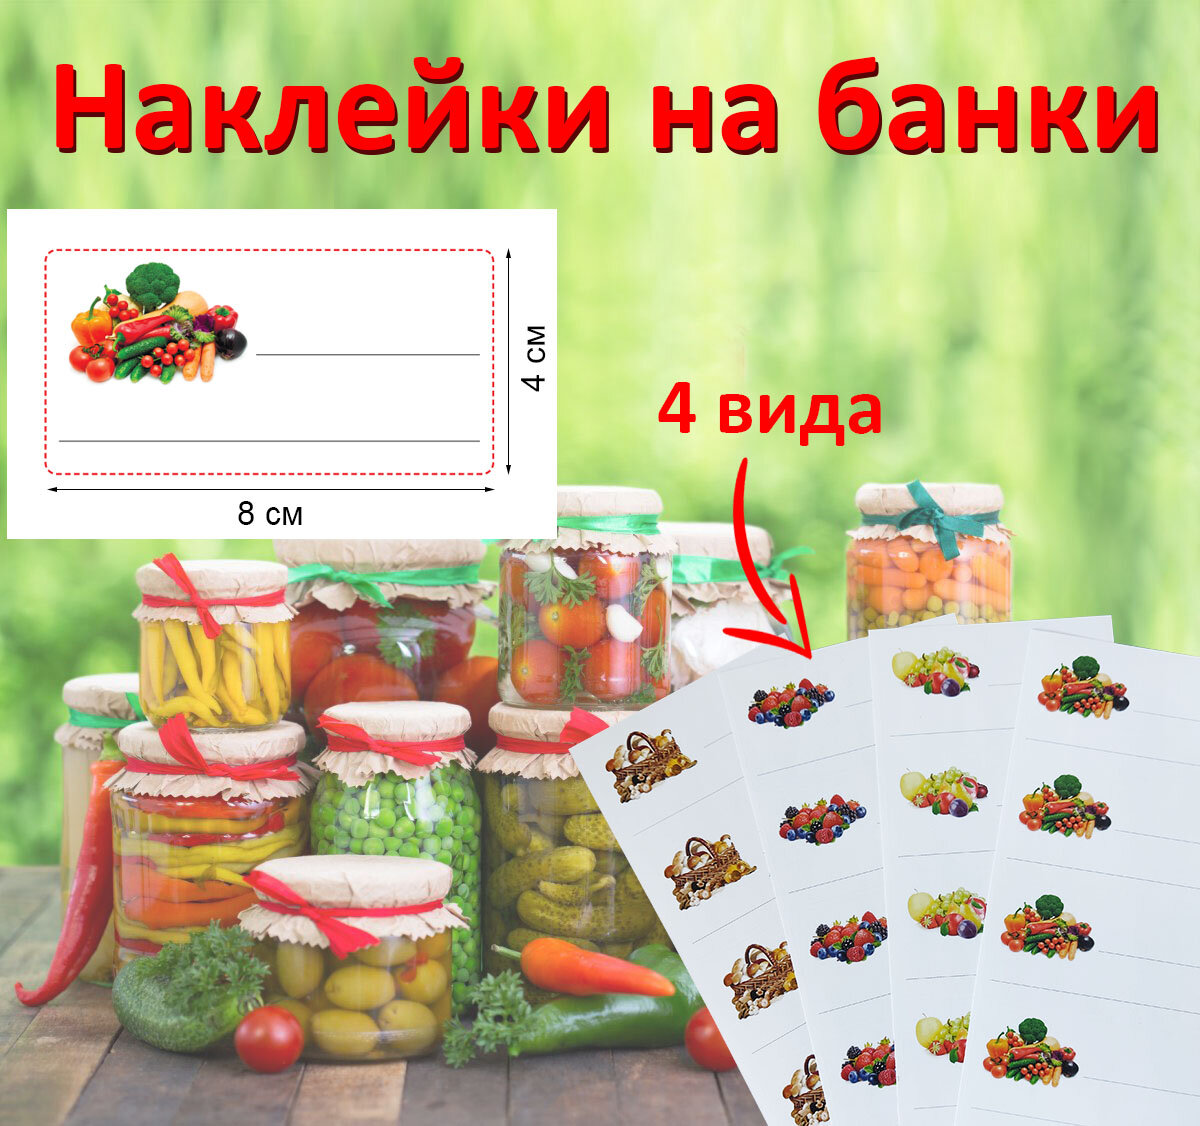 Наклейки на банки для заготовок и консервации. Самоклеящиеся этикетки для подписи банок (соленья, компоты, грибы, ягоды, варенье).